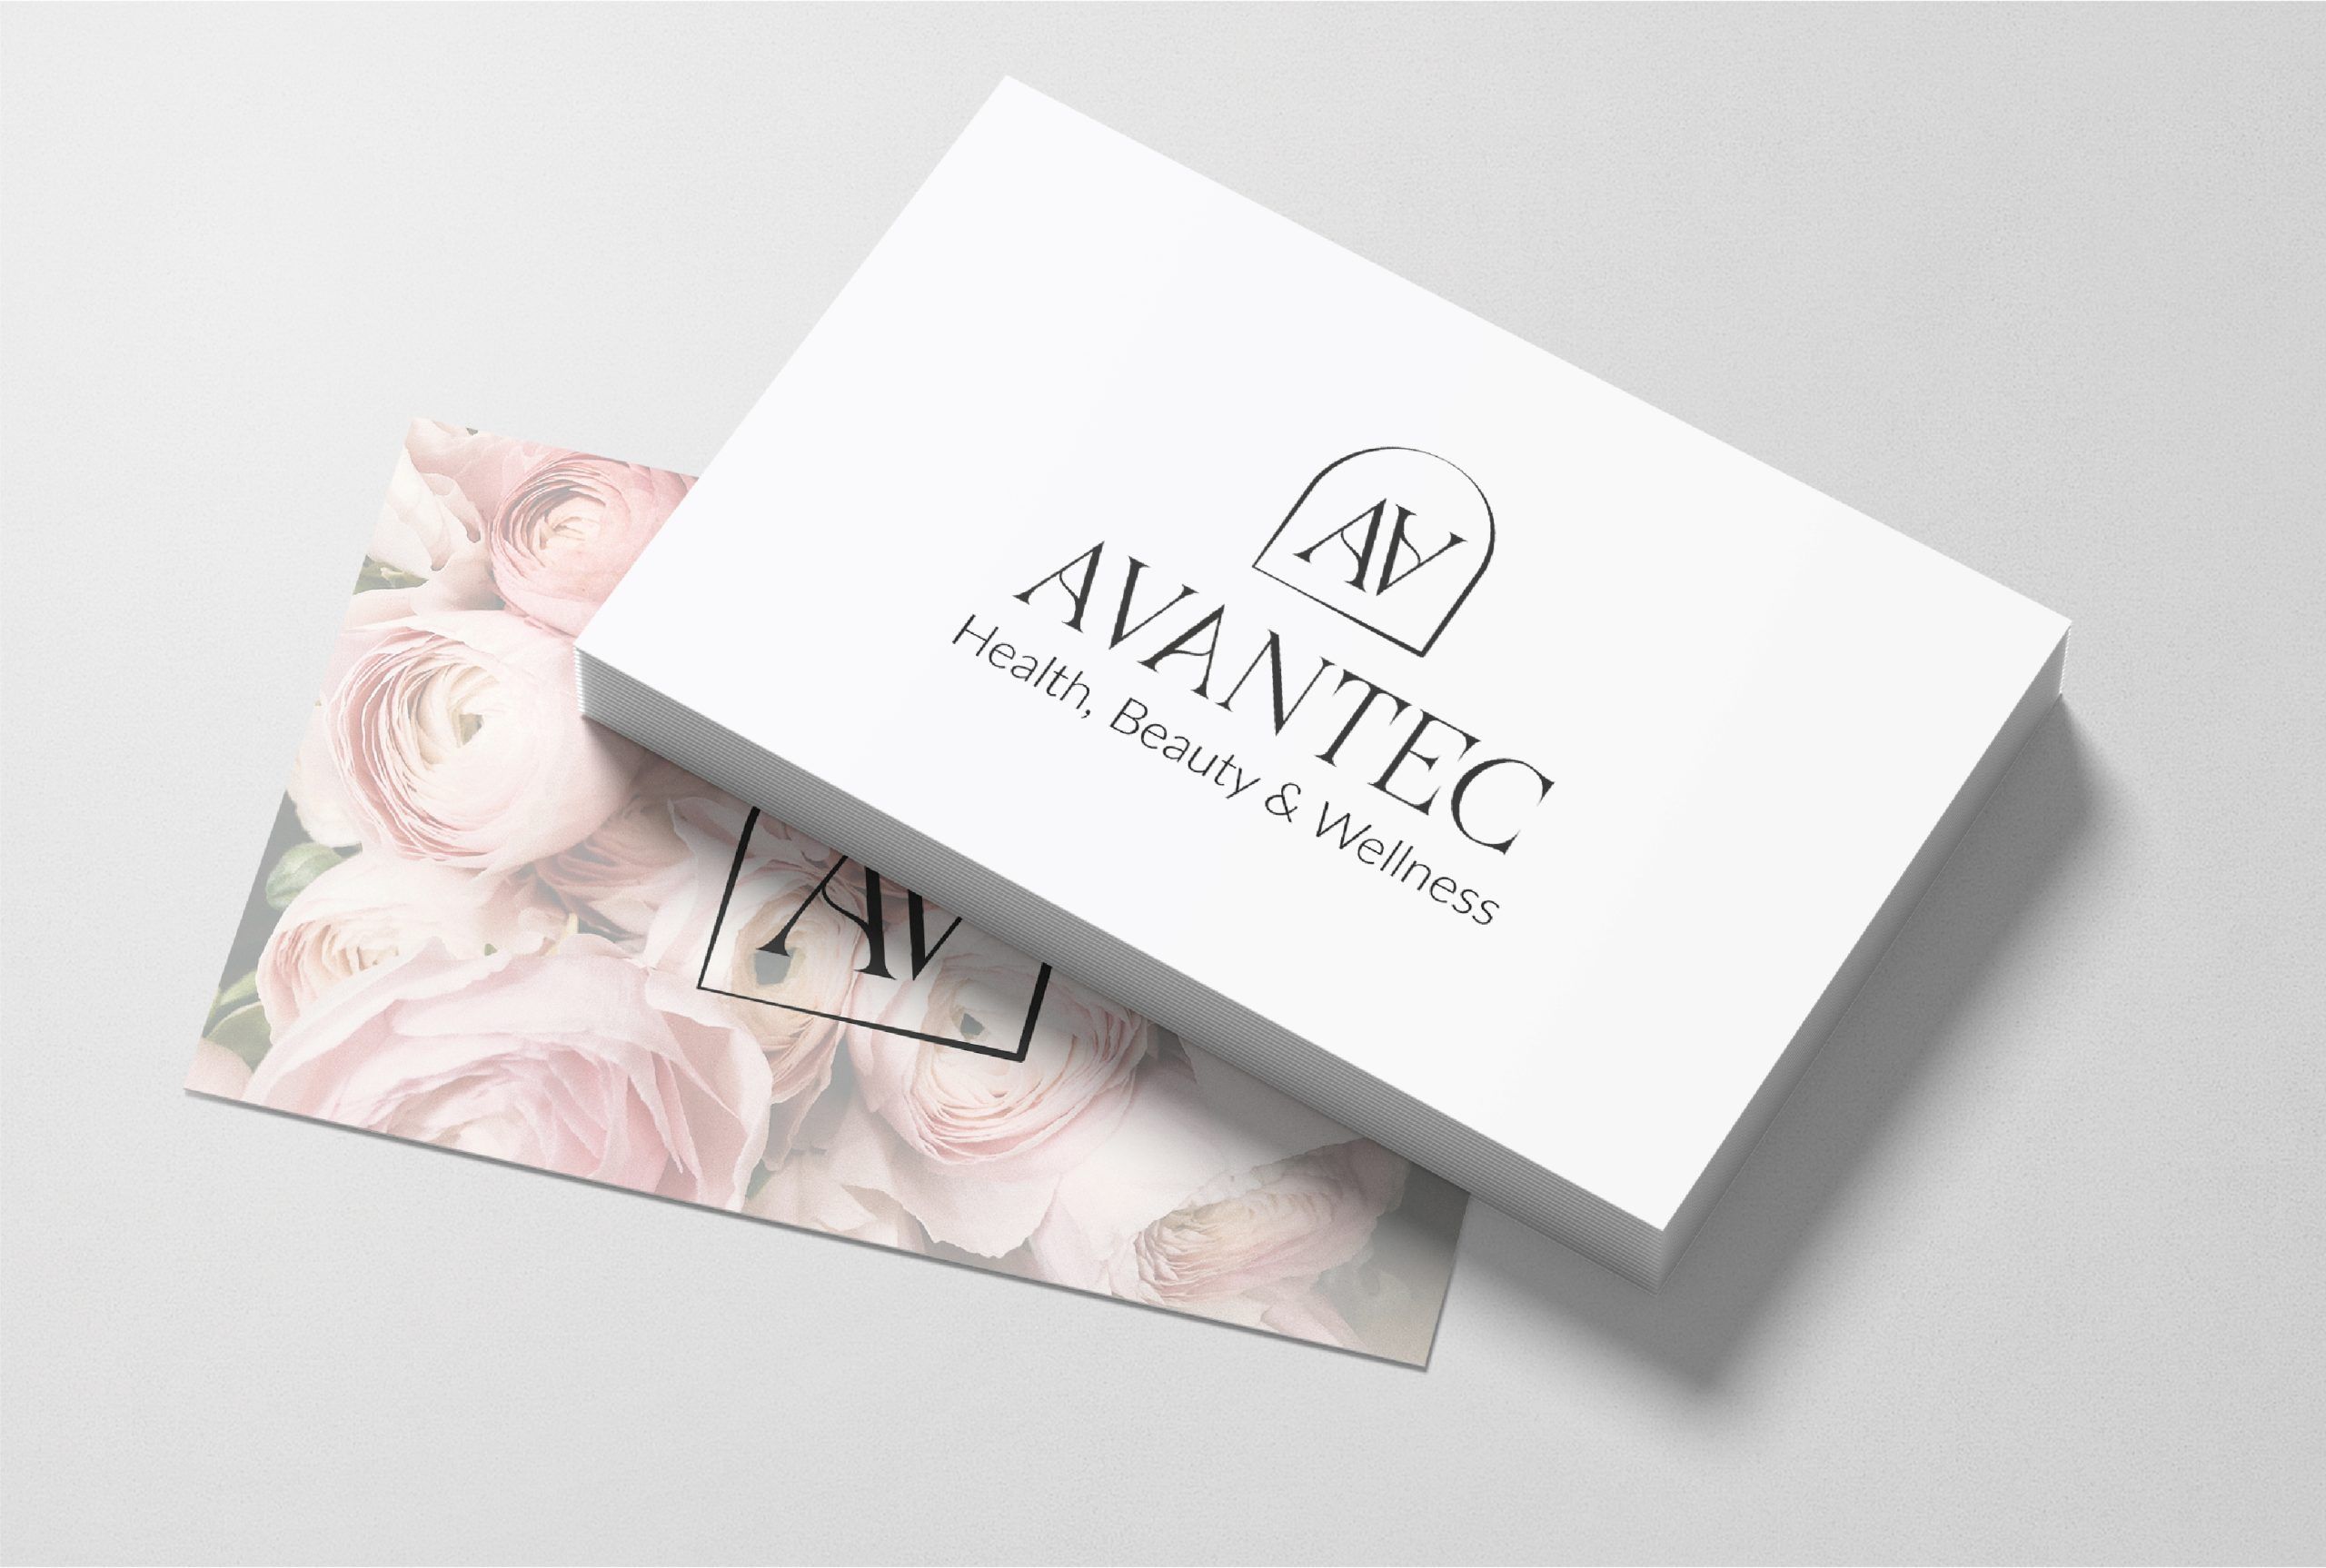 Diseño de tarjeta para AVANTEC by LA SUIZA